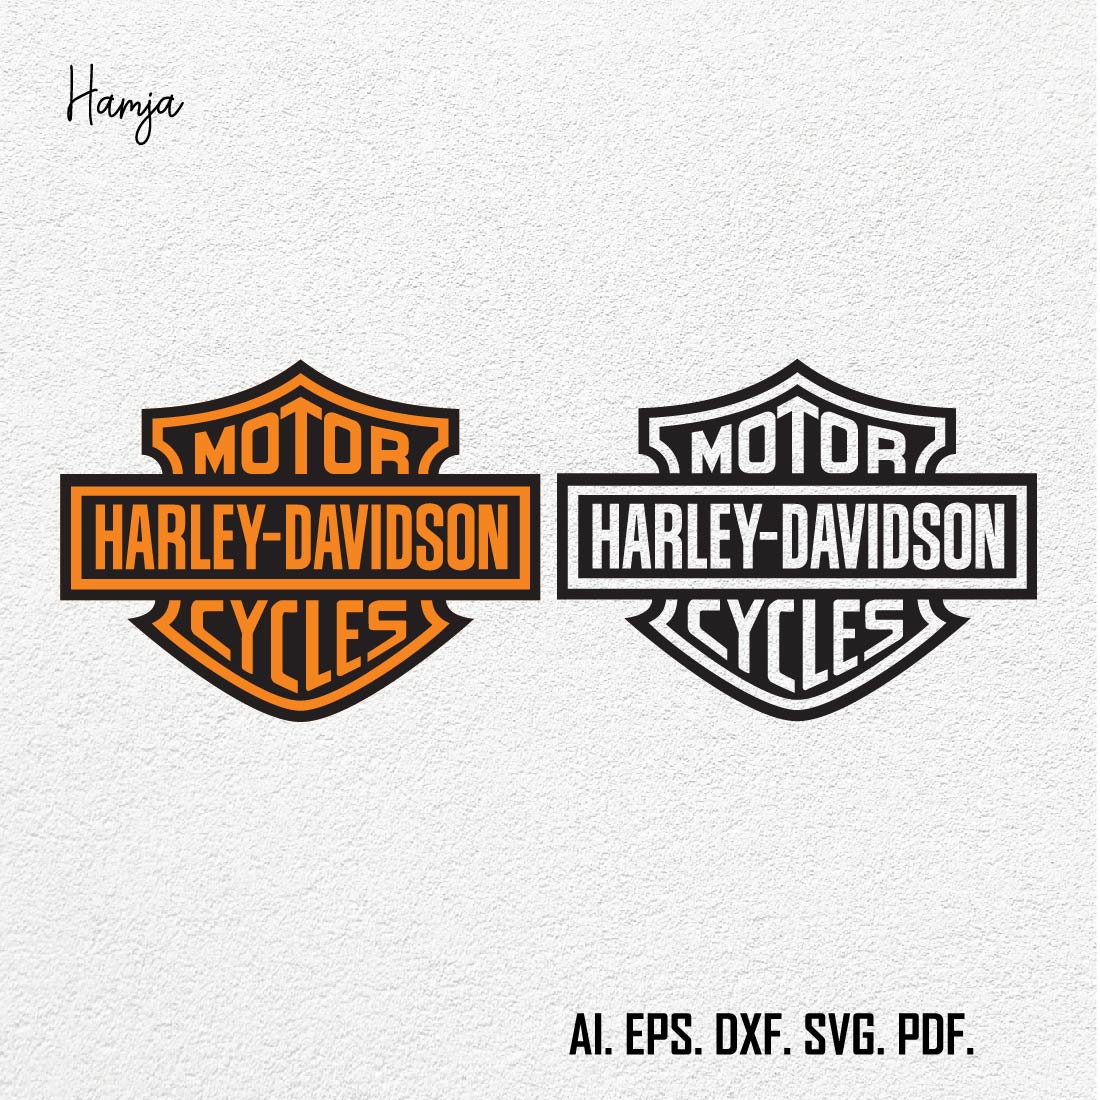 Harley davidson motor svg Gift For Man and Boy SVG PNG EPS dxf,harley davidson logo vector set cover image.